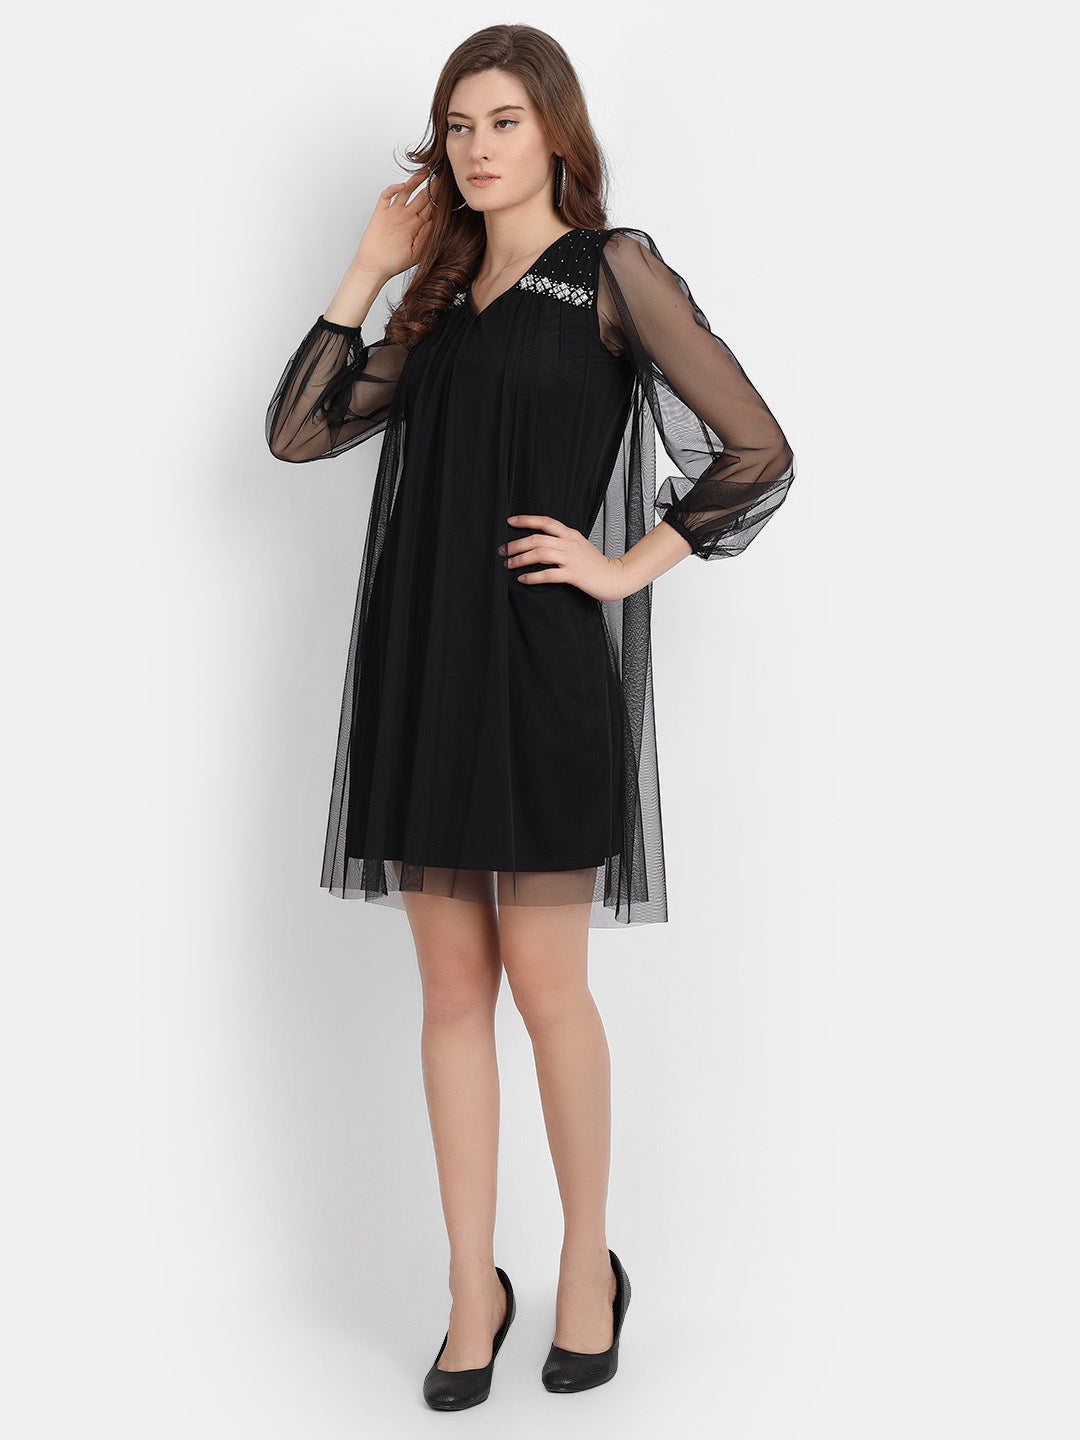 LY2 Embellished Black Short Dress